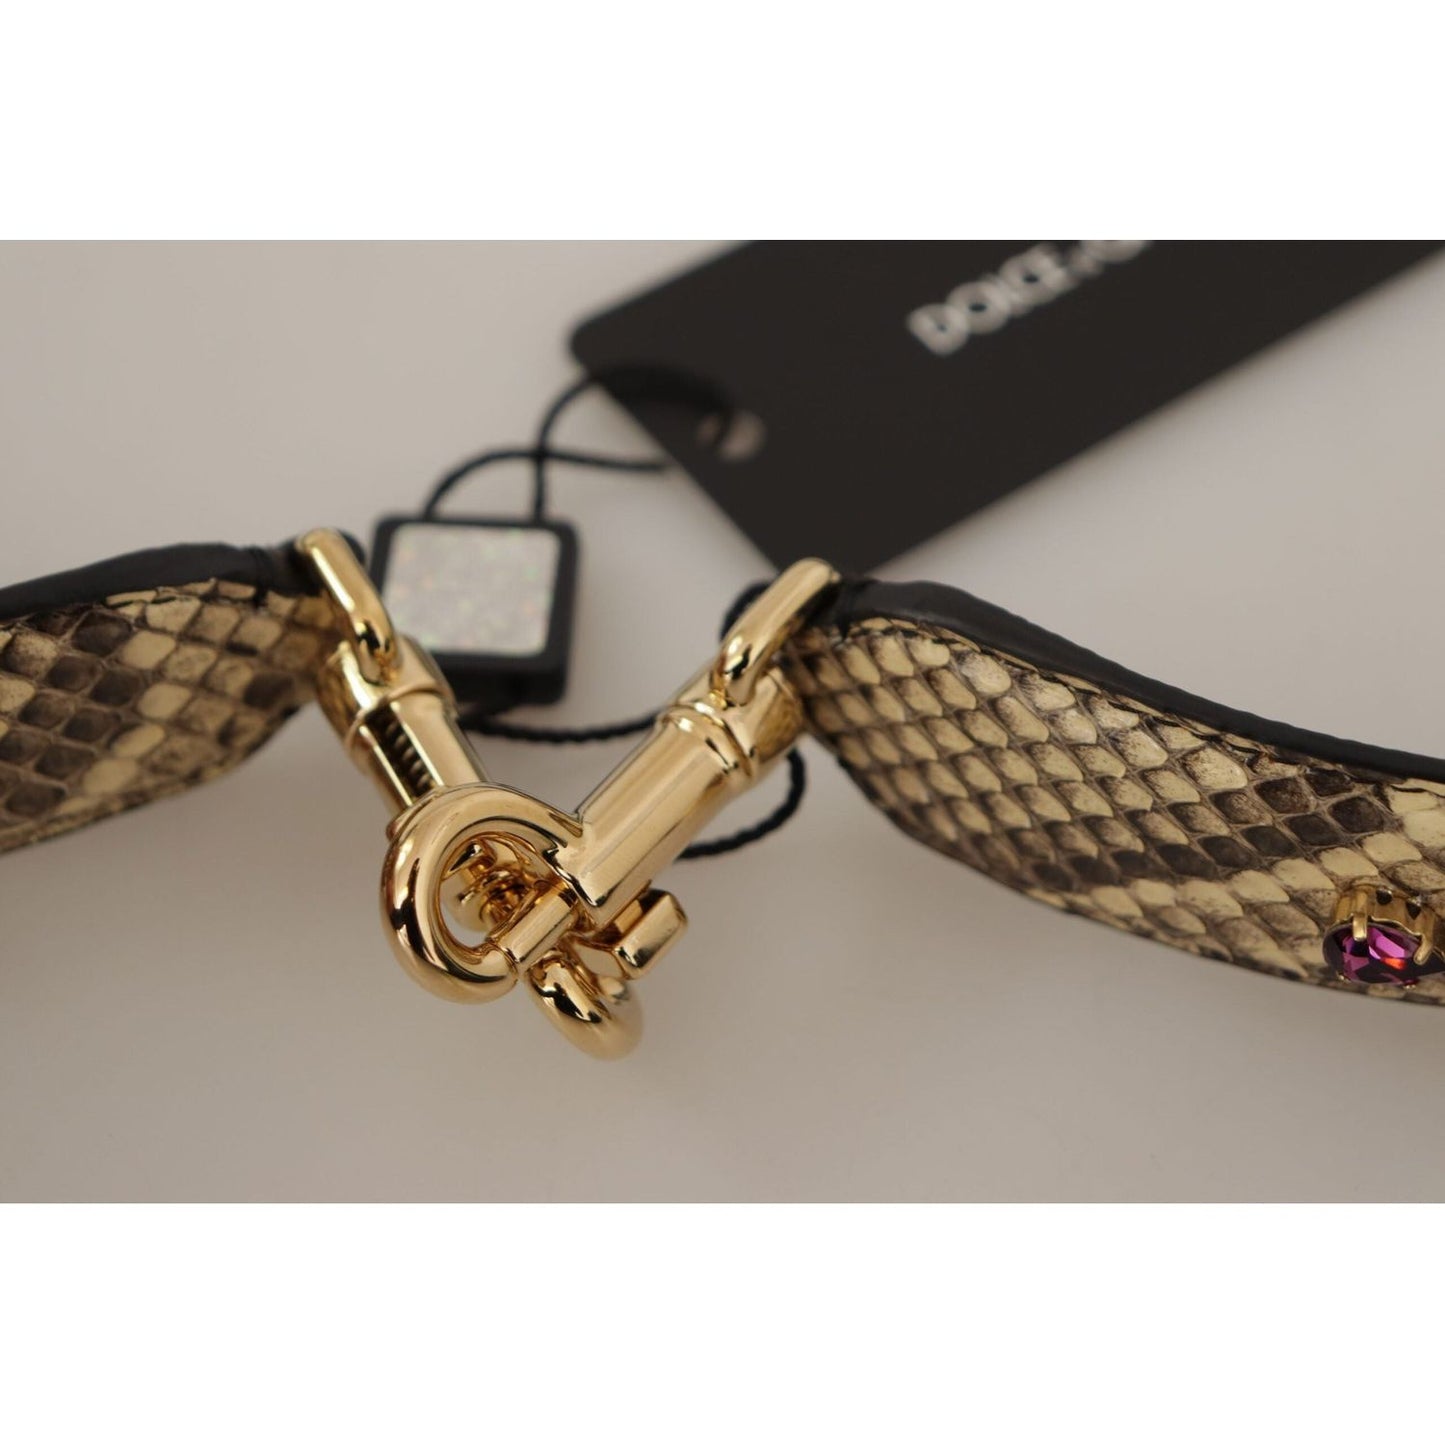 Dolce & Gabbana Elegant Beige Python Leather Shoulder Strap beige-exotic-leather-crystals-reversible-shoulder-strap IMG_0061-1-scaled-294a8d63-6a5.jpg